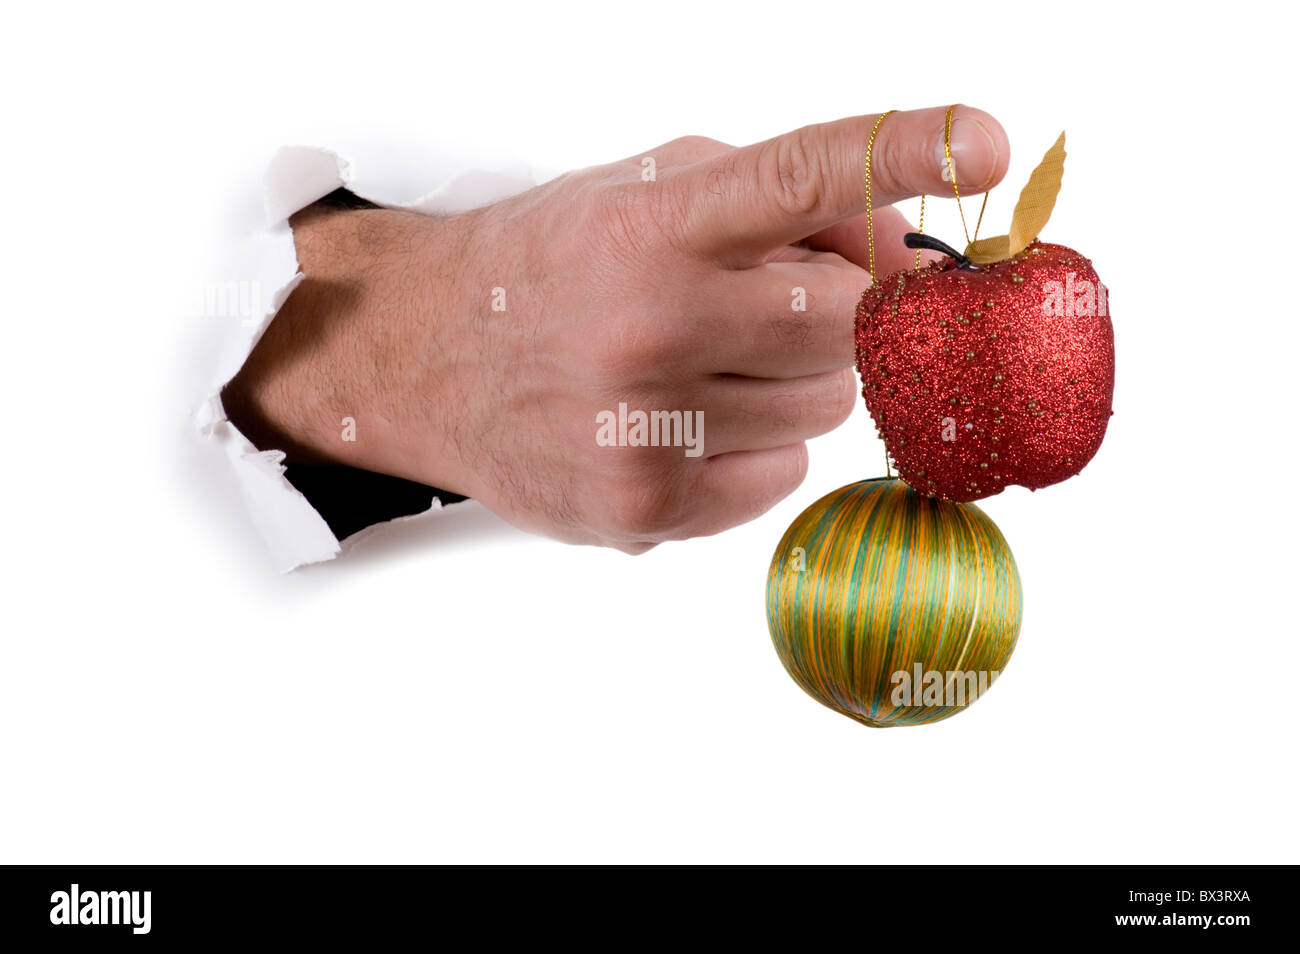 Objet sur blanc - la main avec des décorations de Noël Banque D'Images